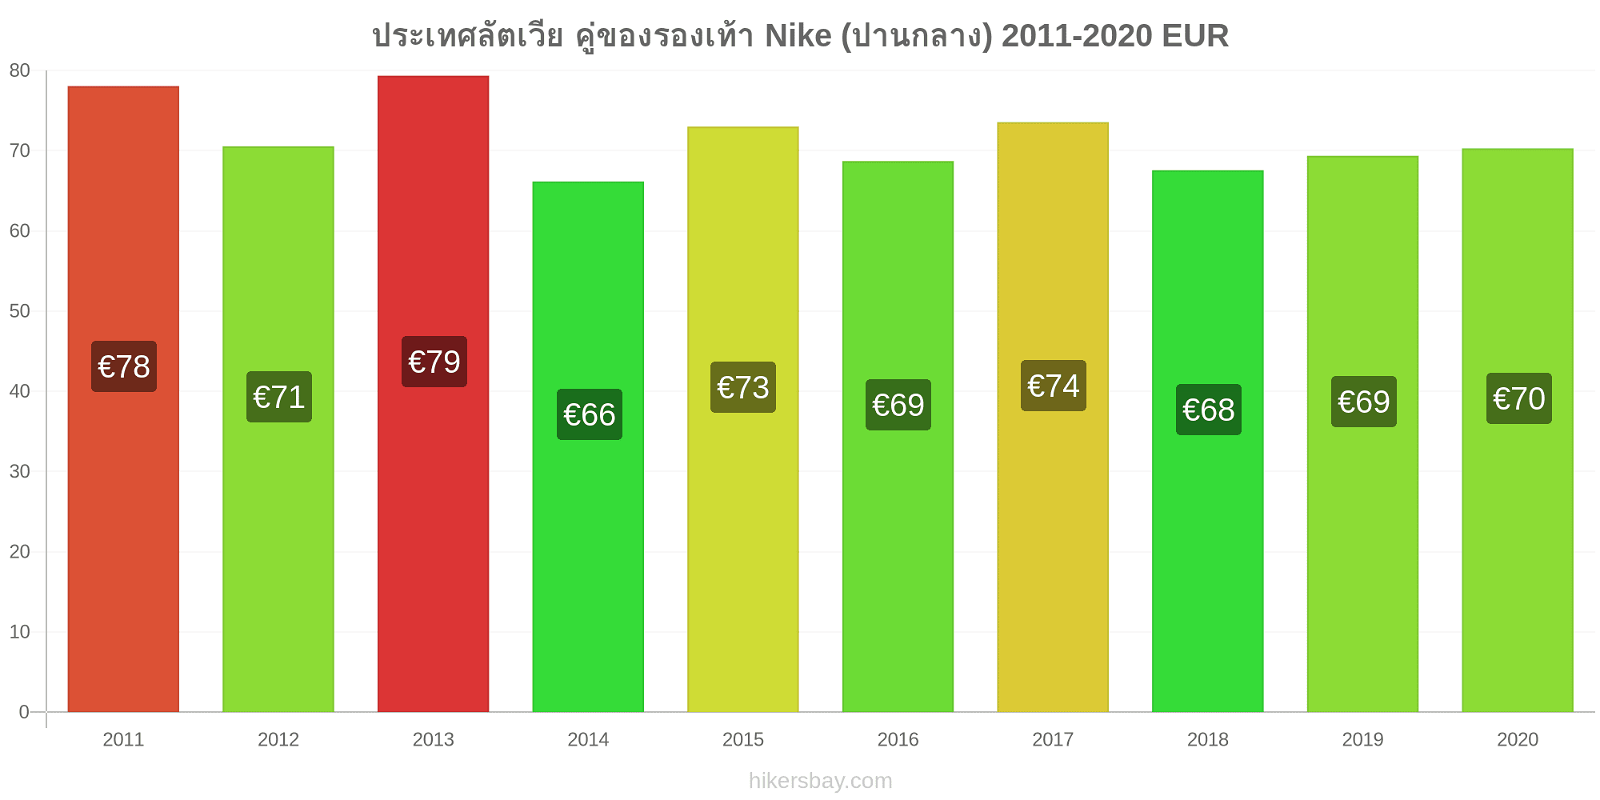 ประเทศลัตเวีย การเปลี่ยนแปลงราคา คู่ของรองเท้า Nike (ปานกลาง) hikersbay.com